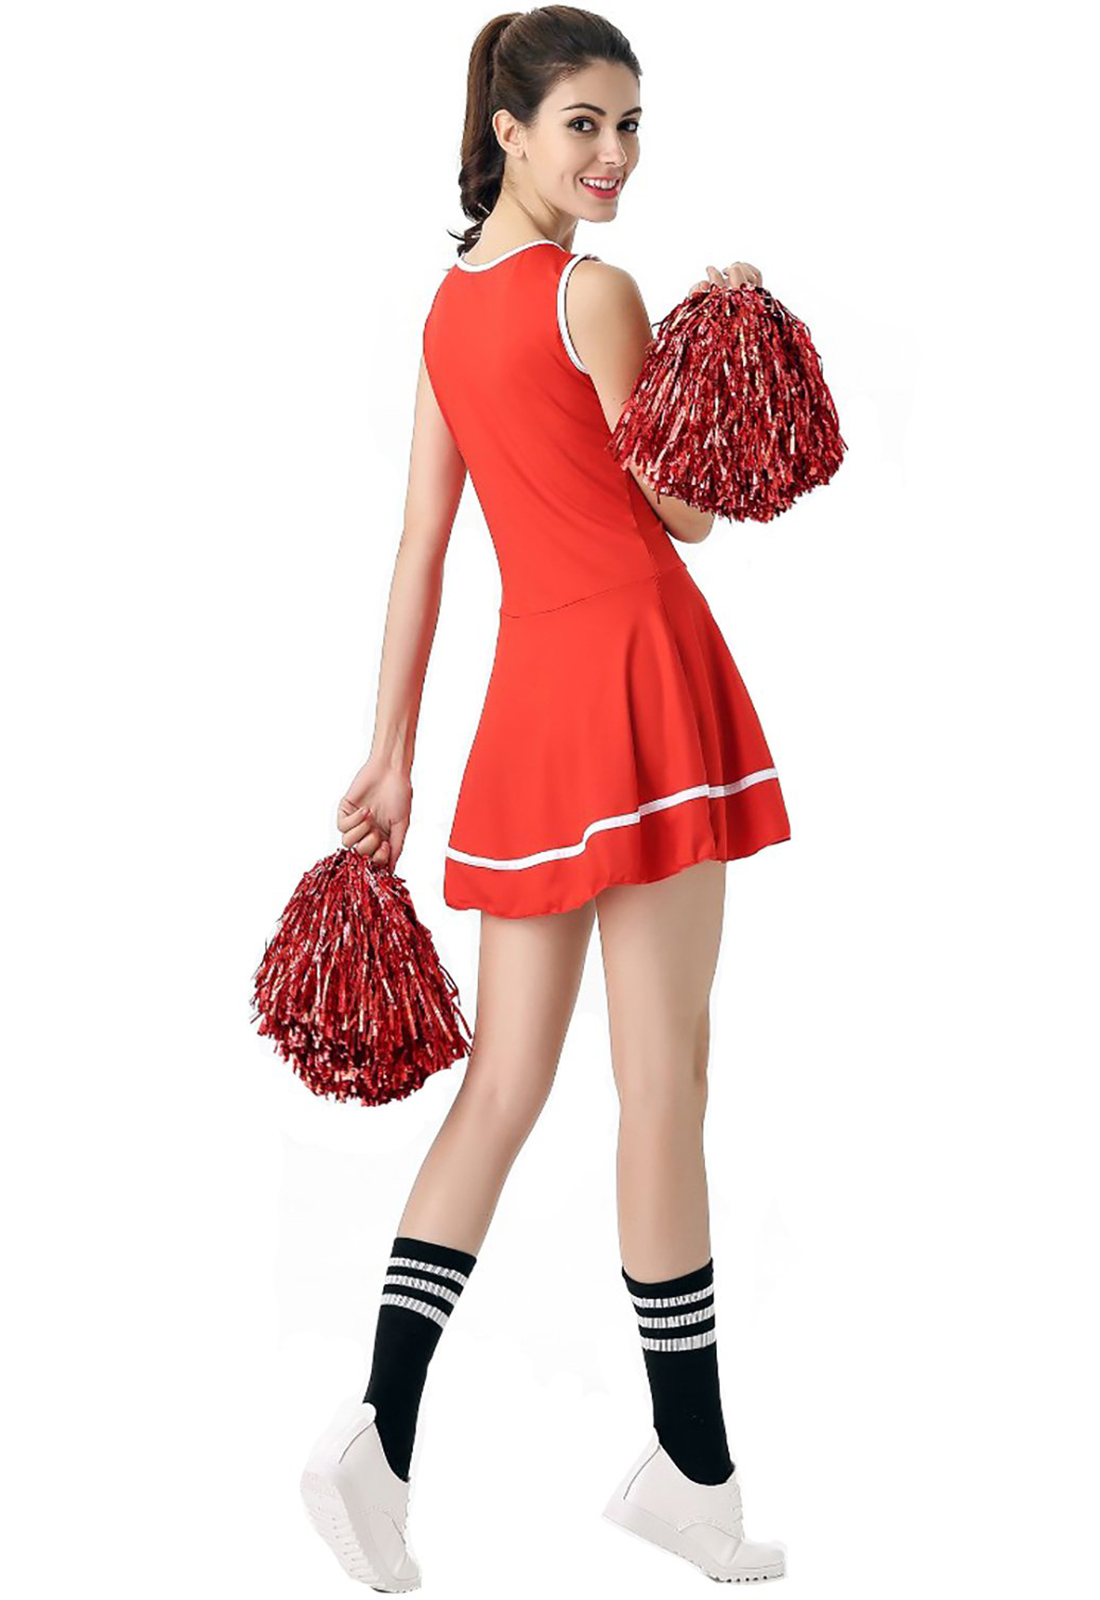 Costume da ragazza pon pon rossa Costume da ragazza pon pon alta scuola musicale uniforme senza pom-pom